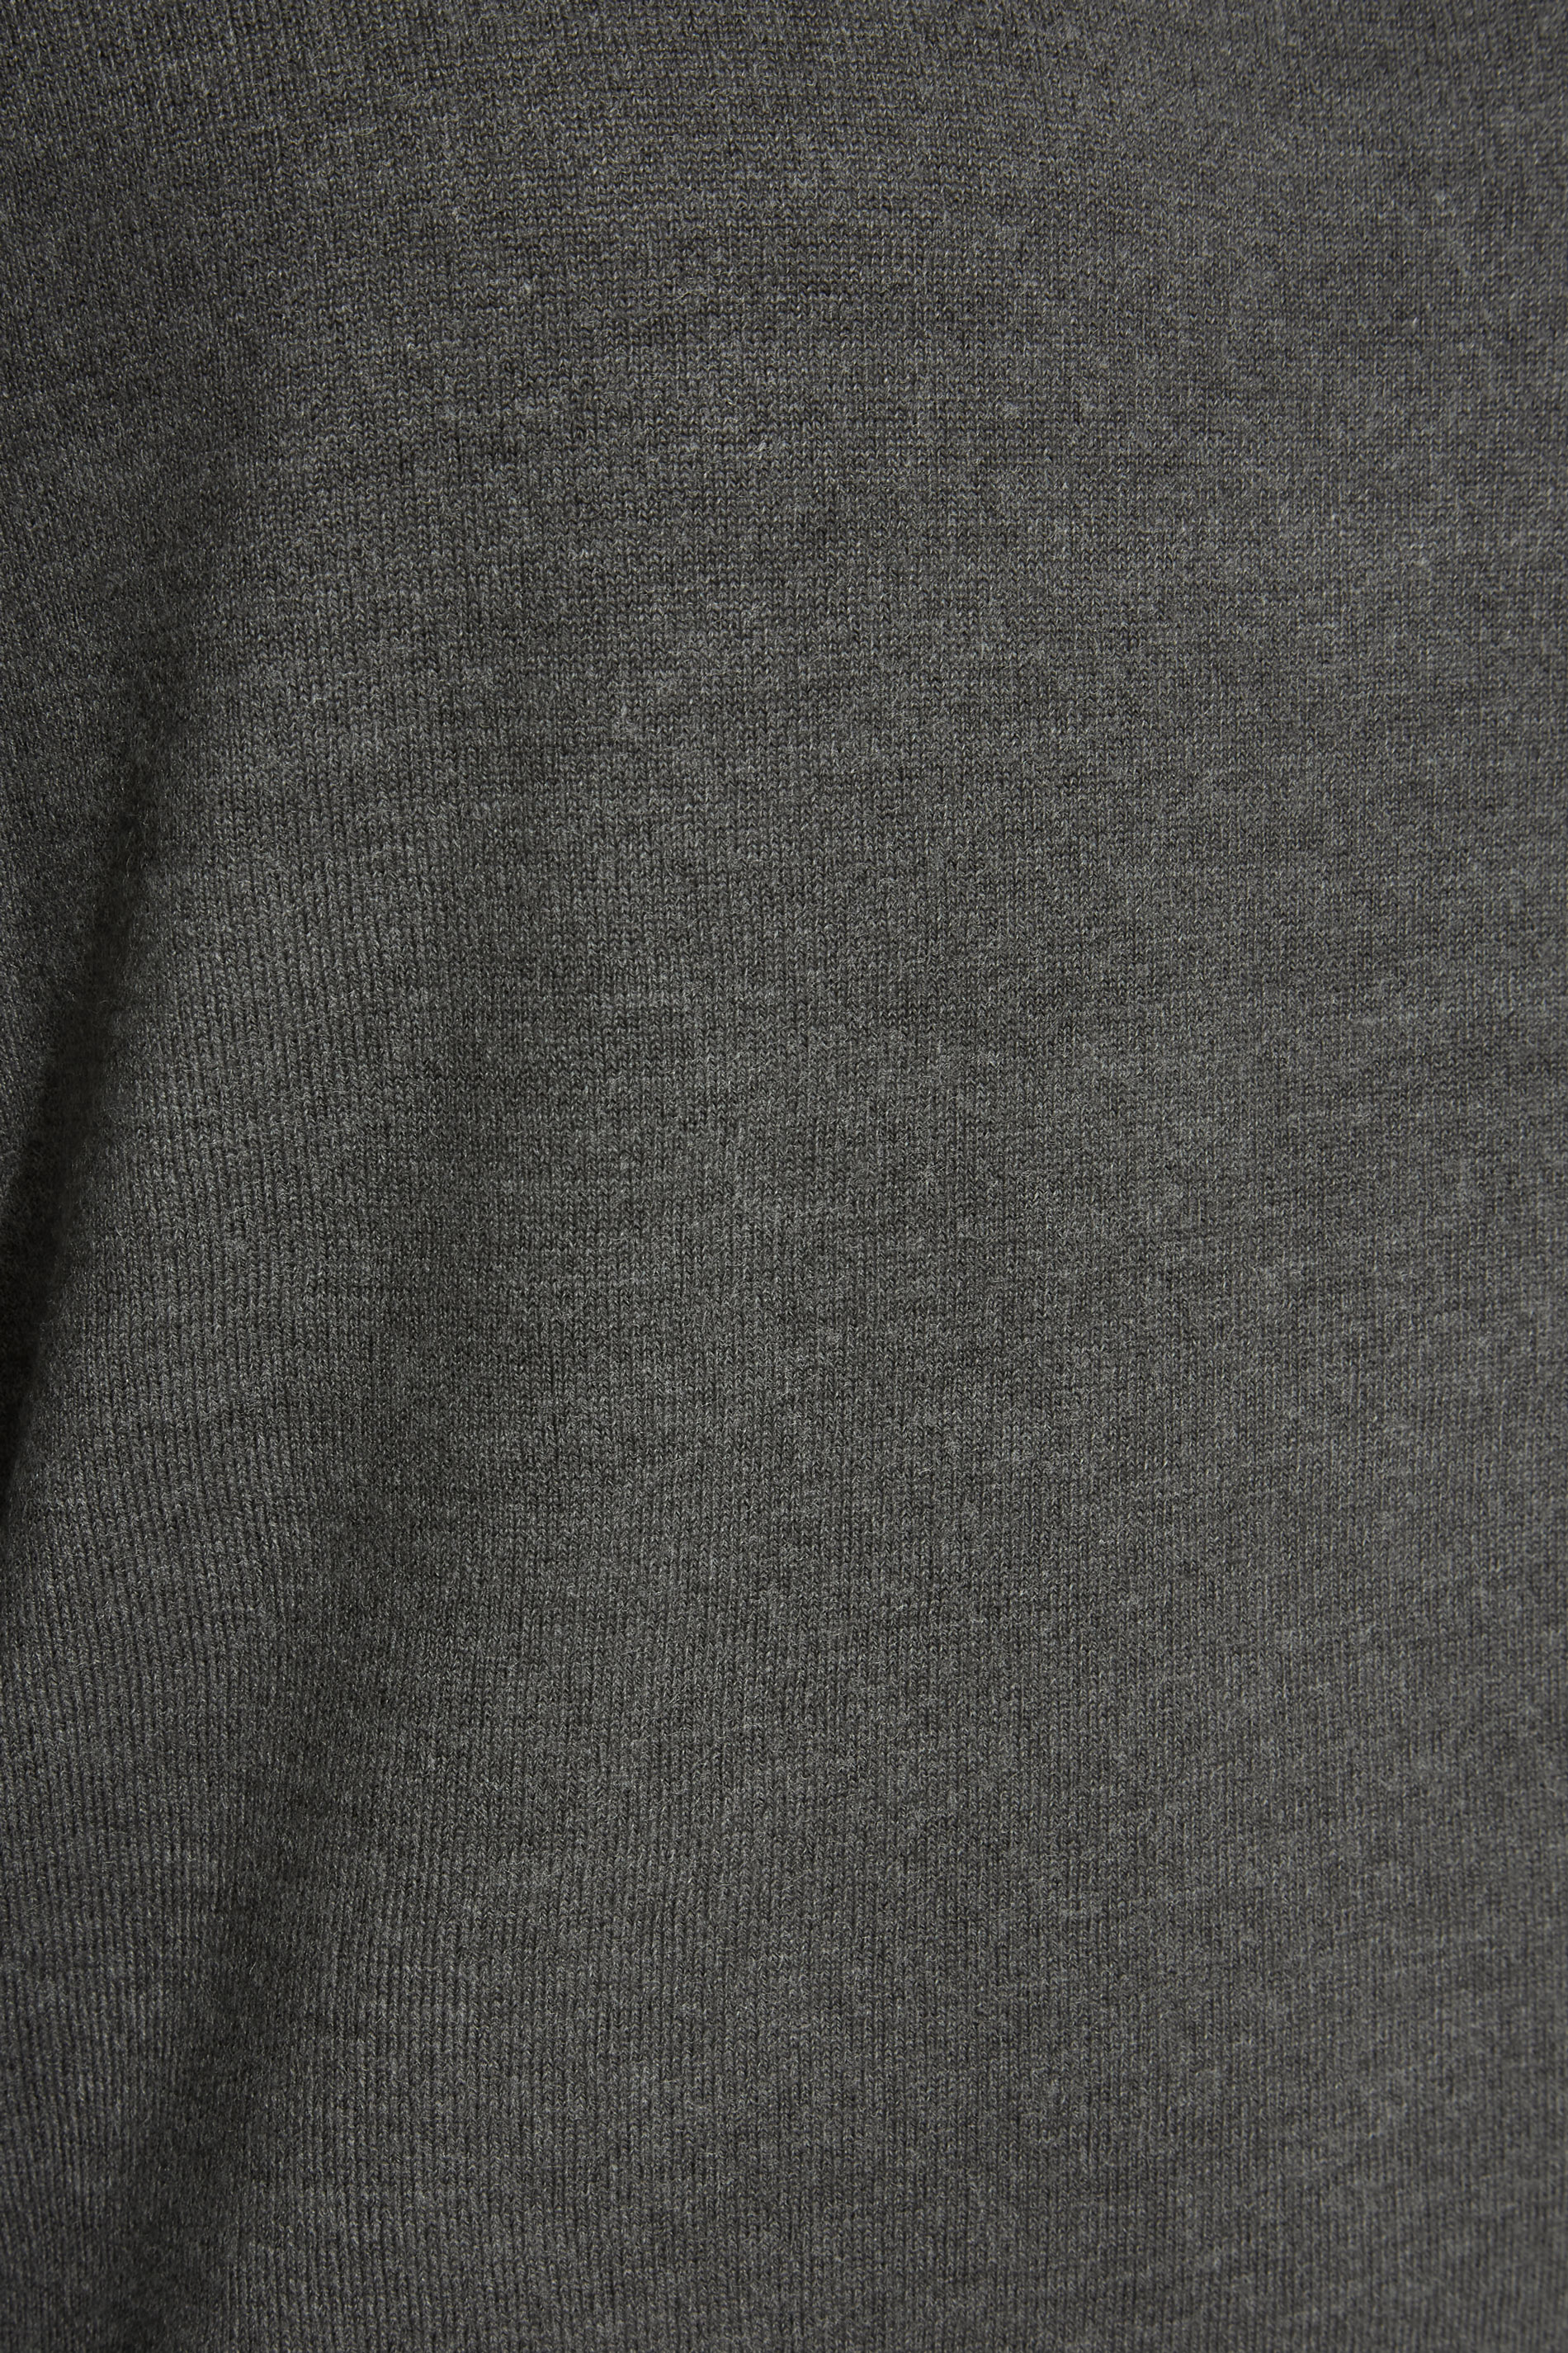 BadRhino Charcoal Grey & White Essential Mock Shirt Jumper | BadRhino 2